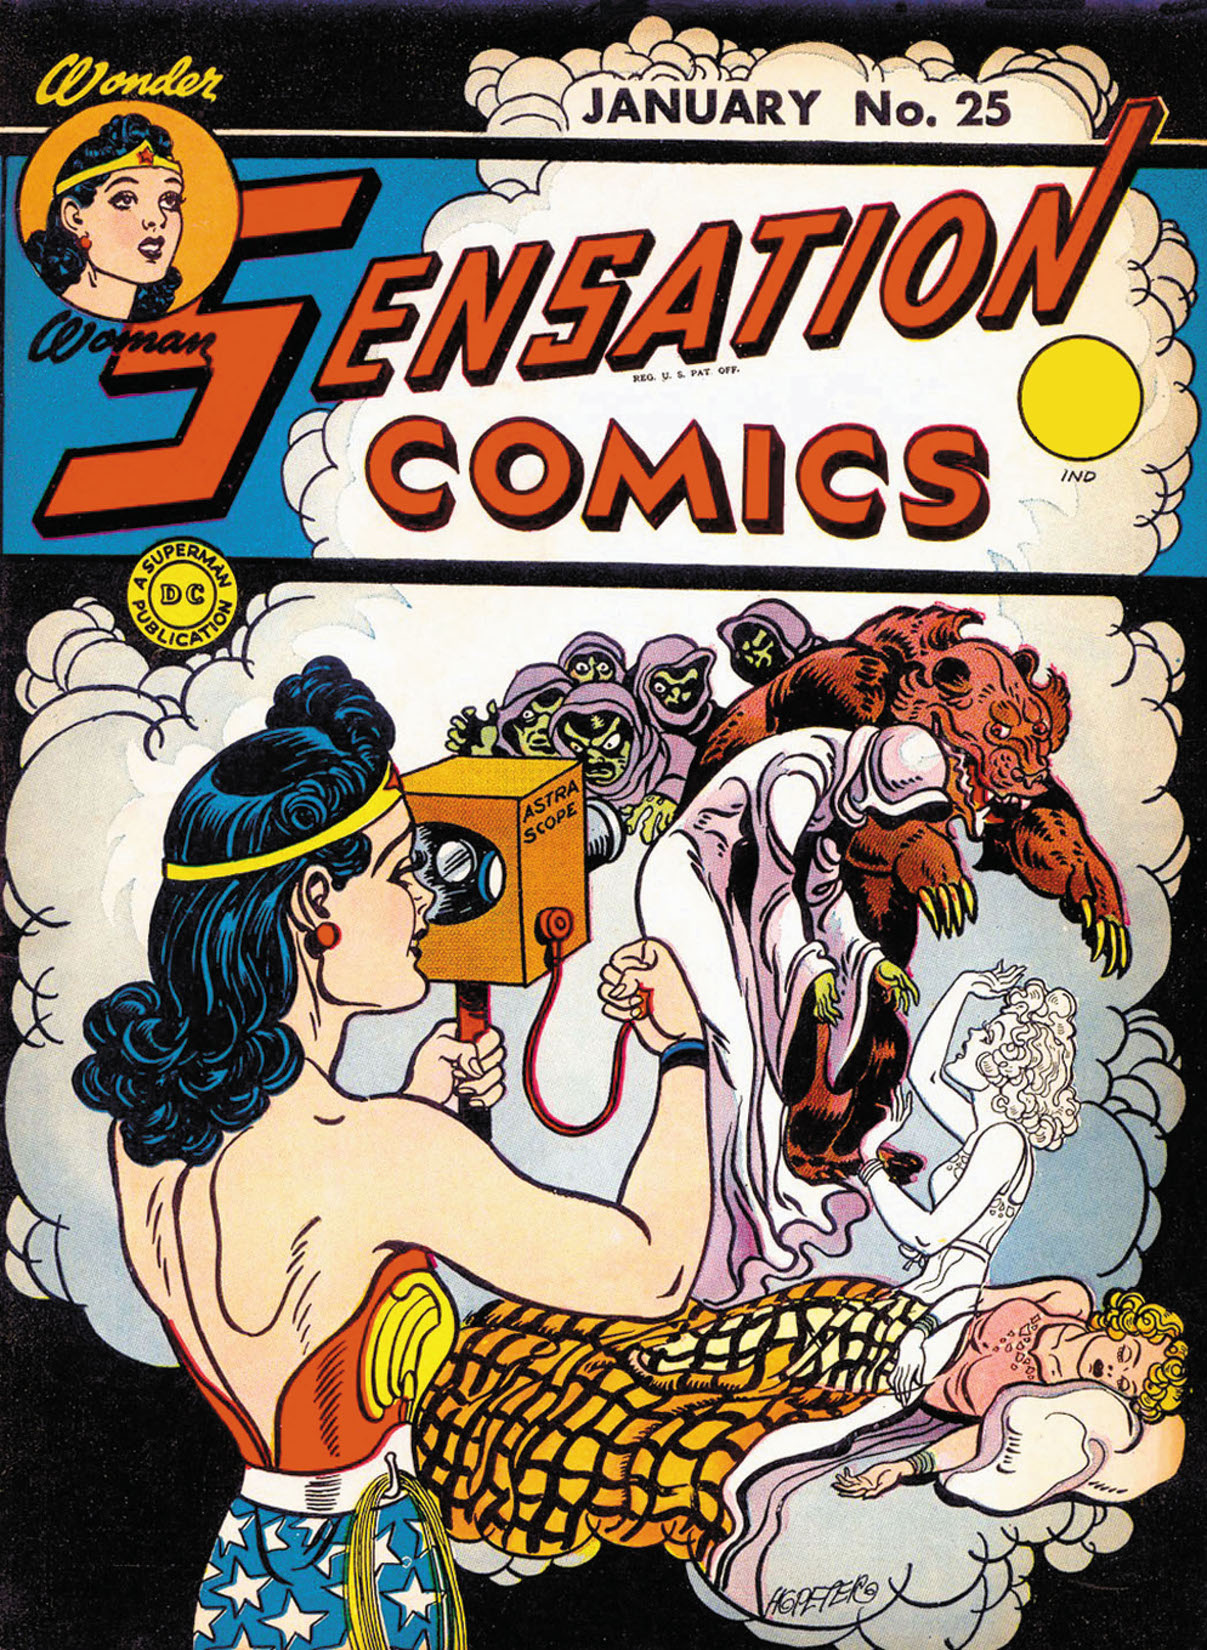 Sensation Comics #25 preview images